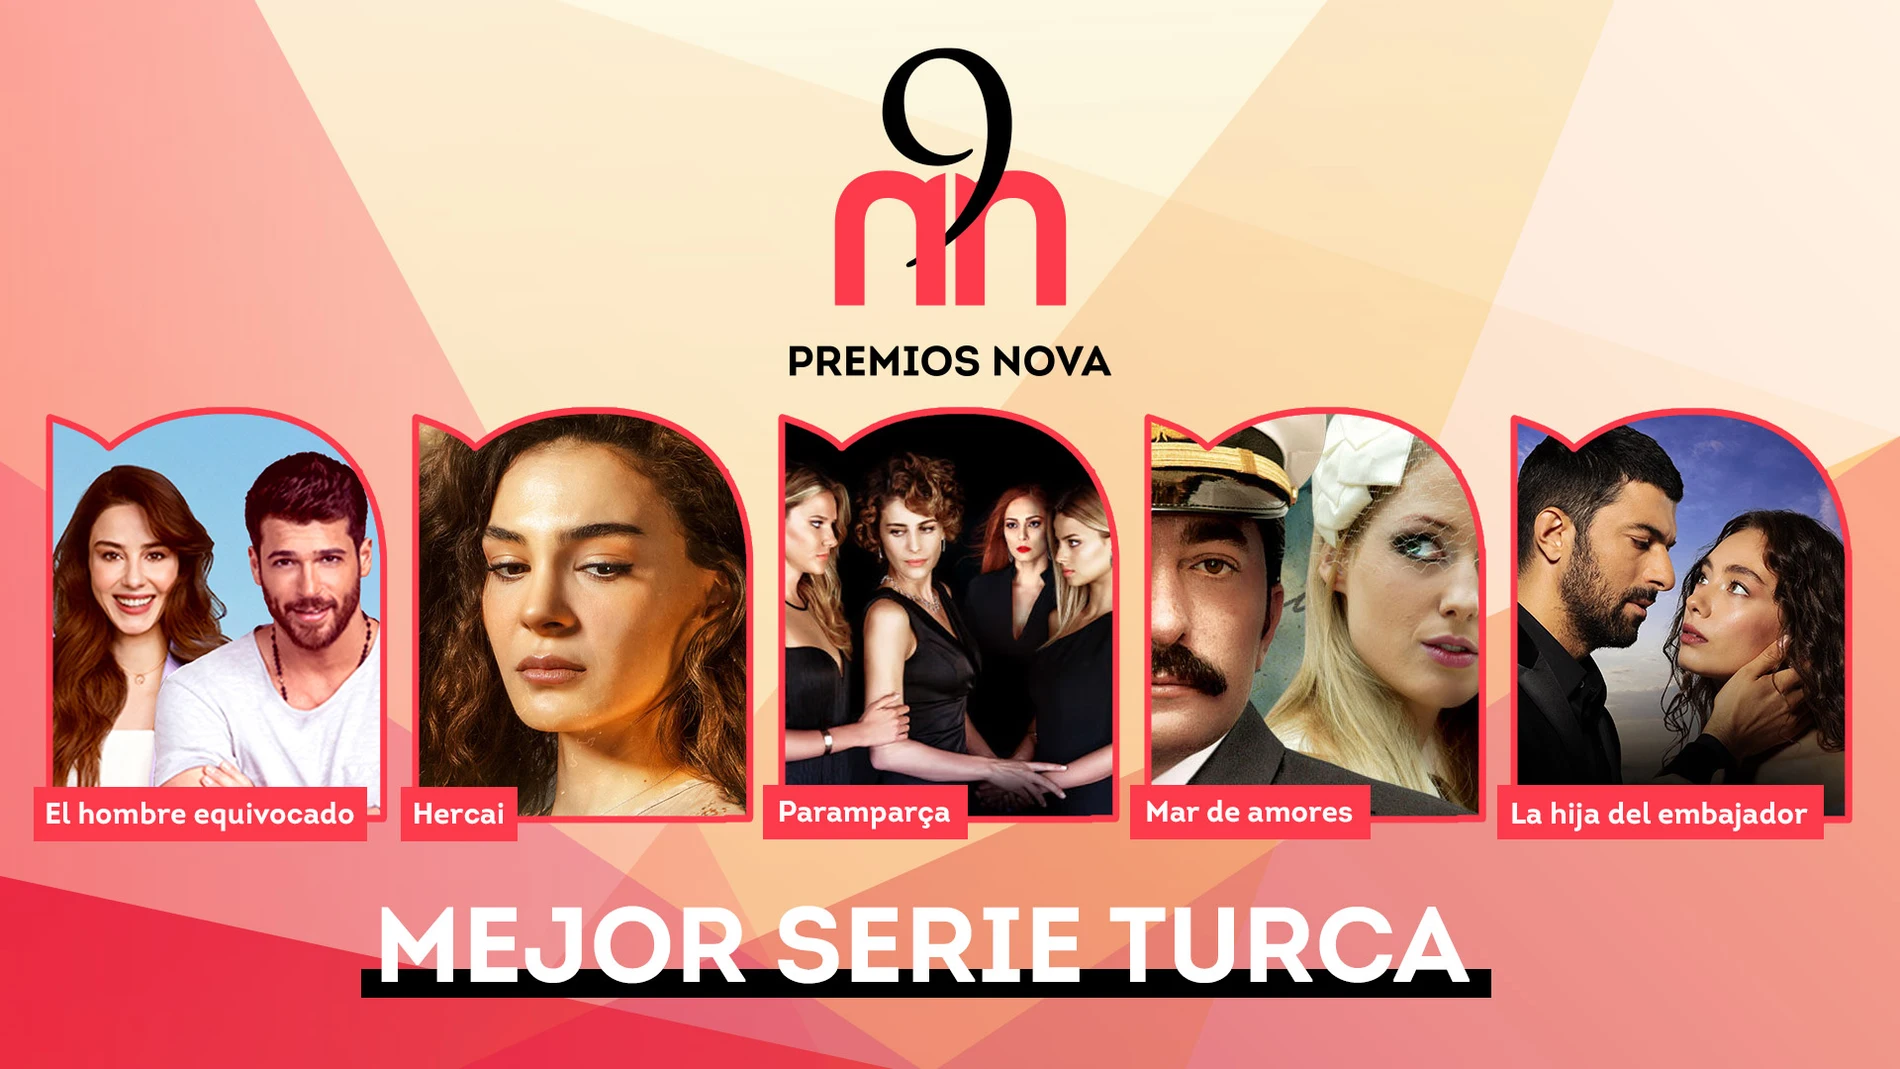 'Las 9 de Nova' Mejor serie turca